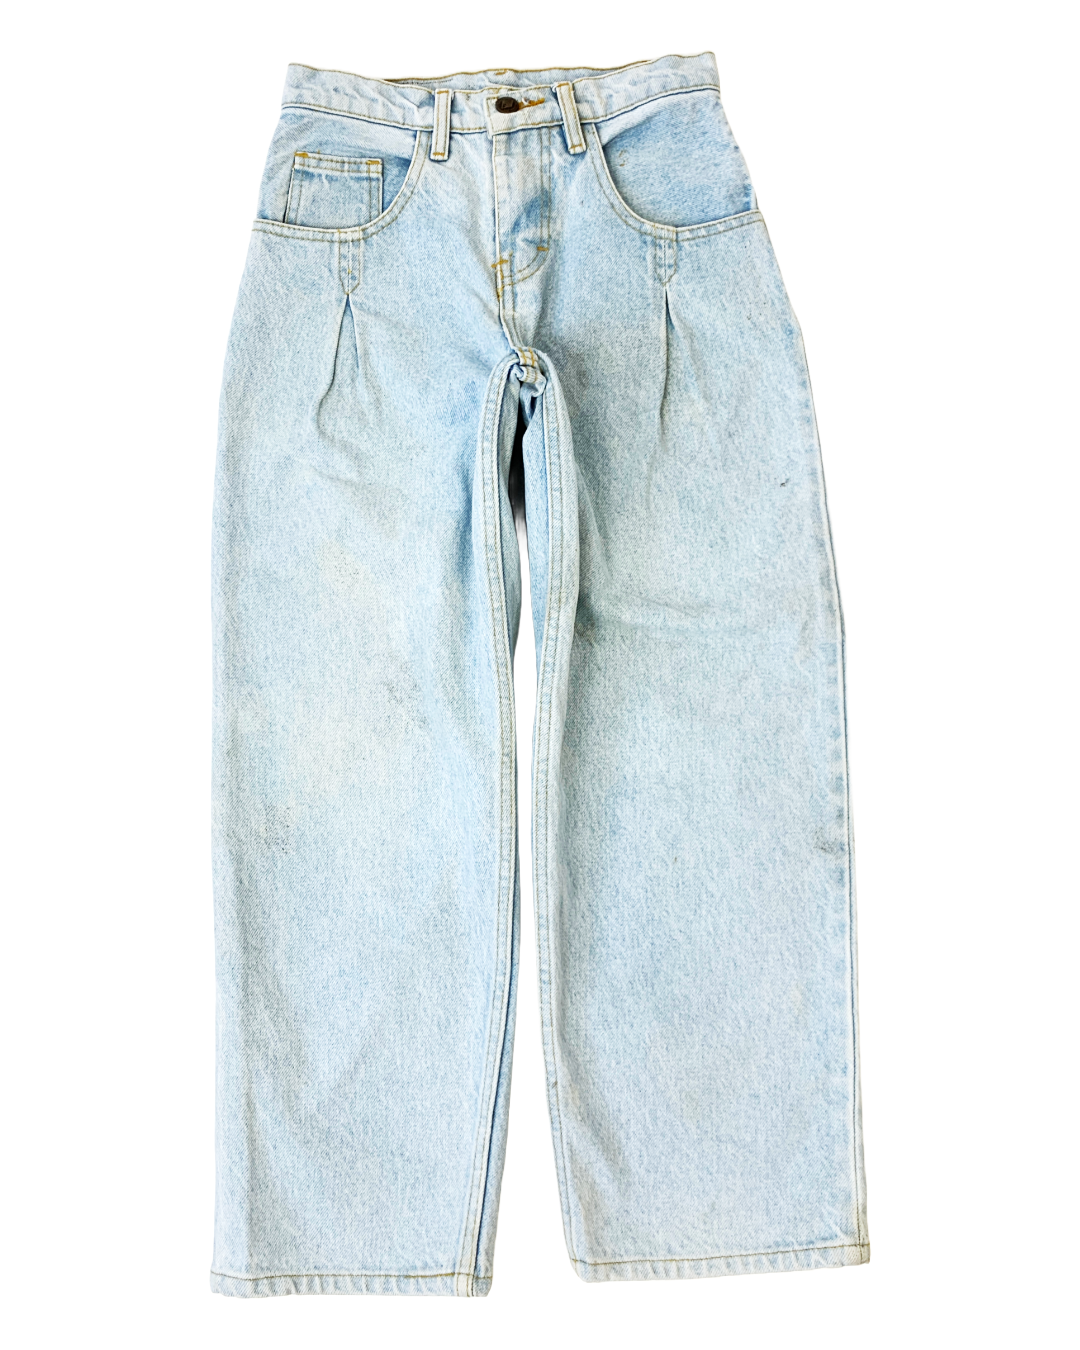 Boss Vycar Cholos Vintage Jeans - 23